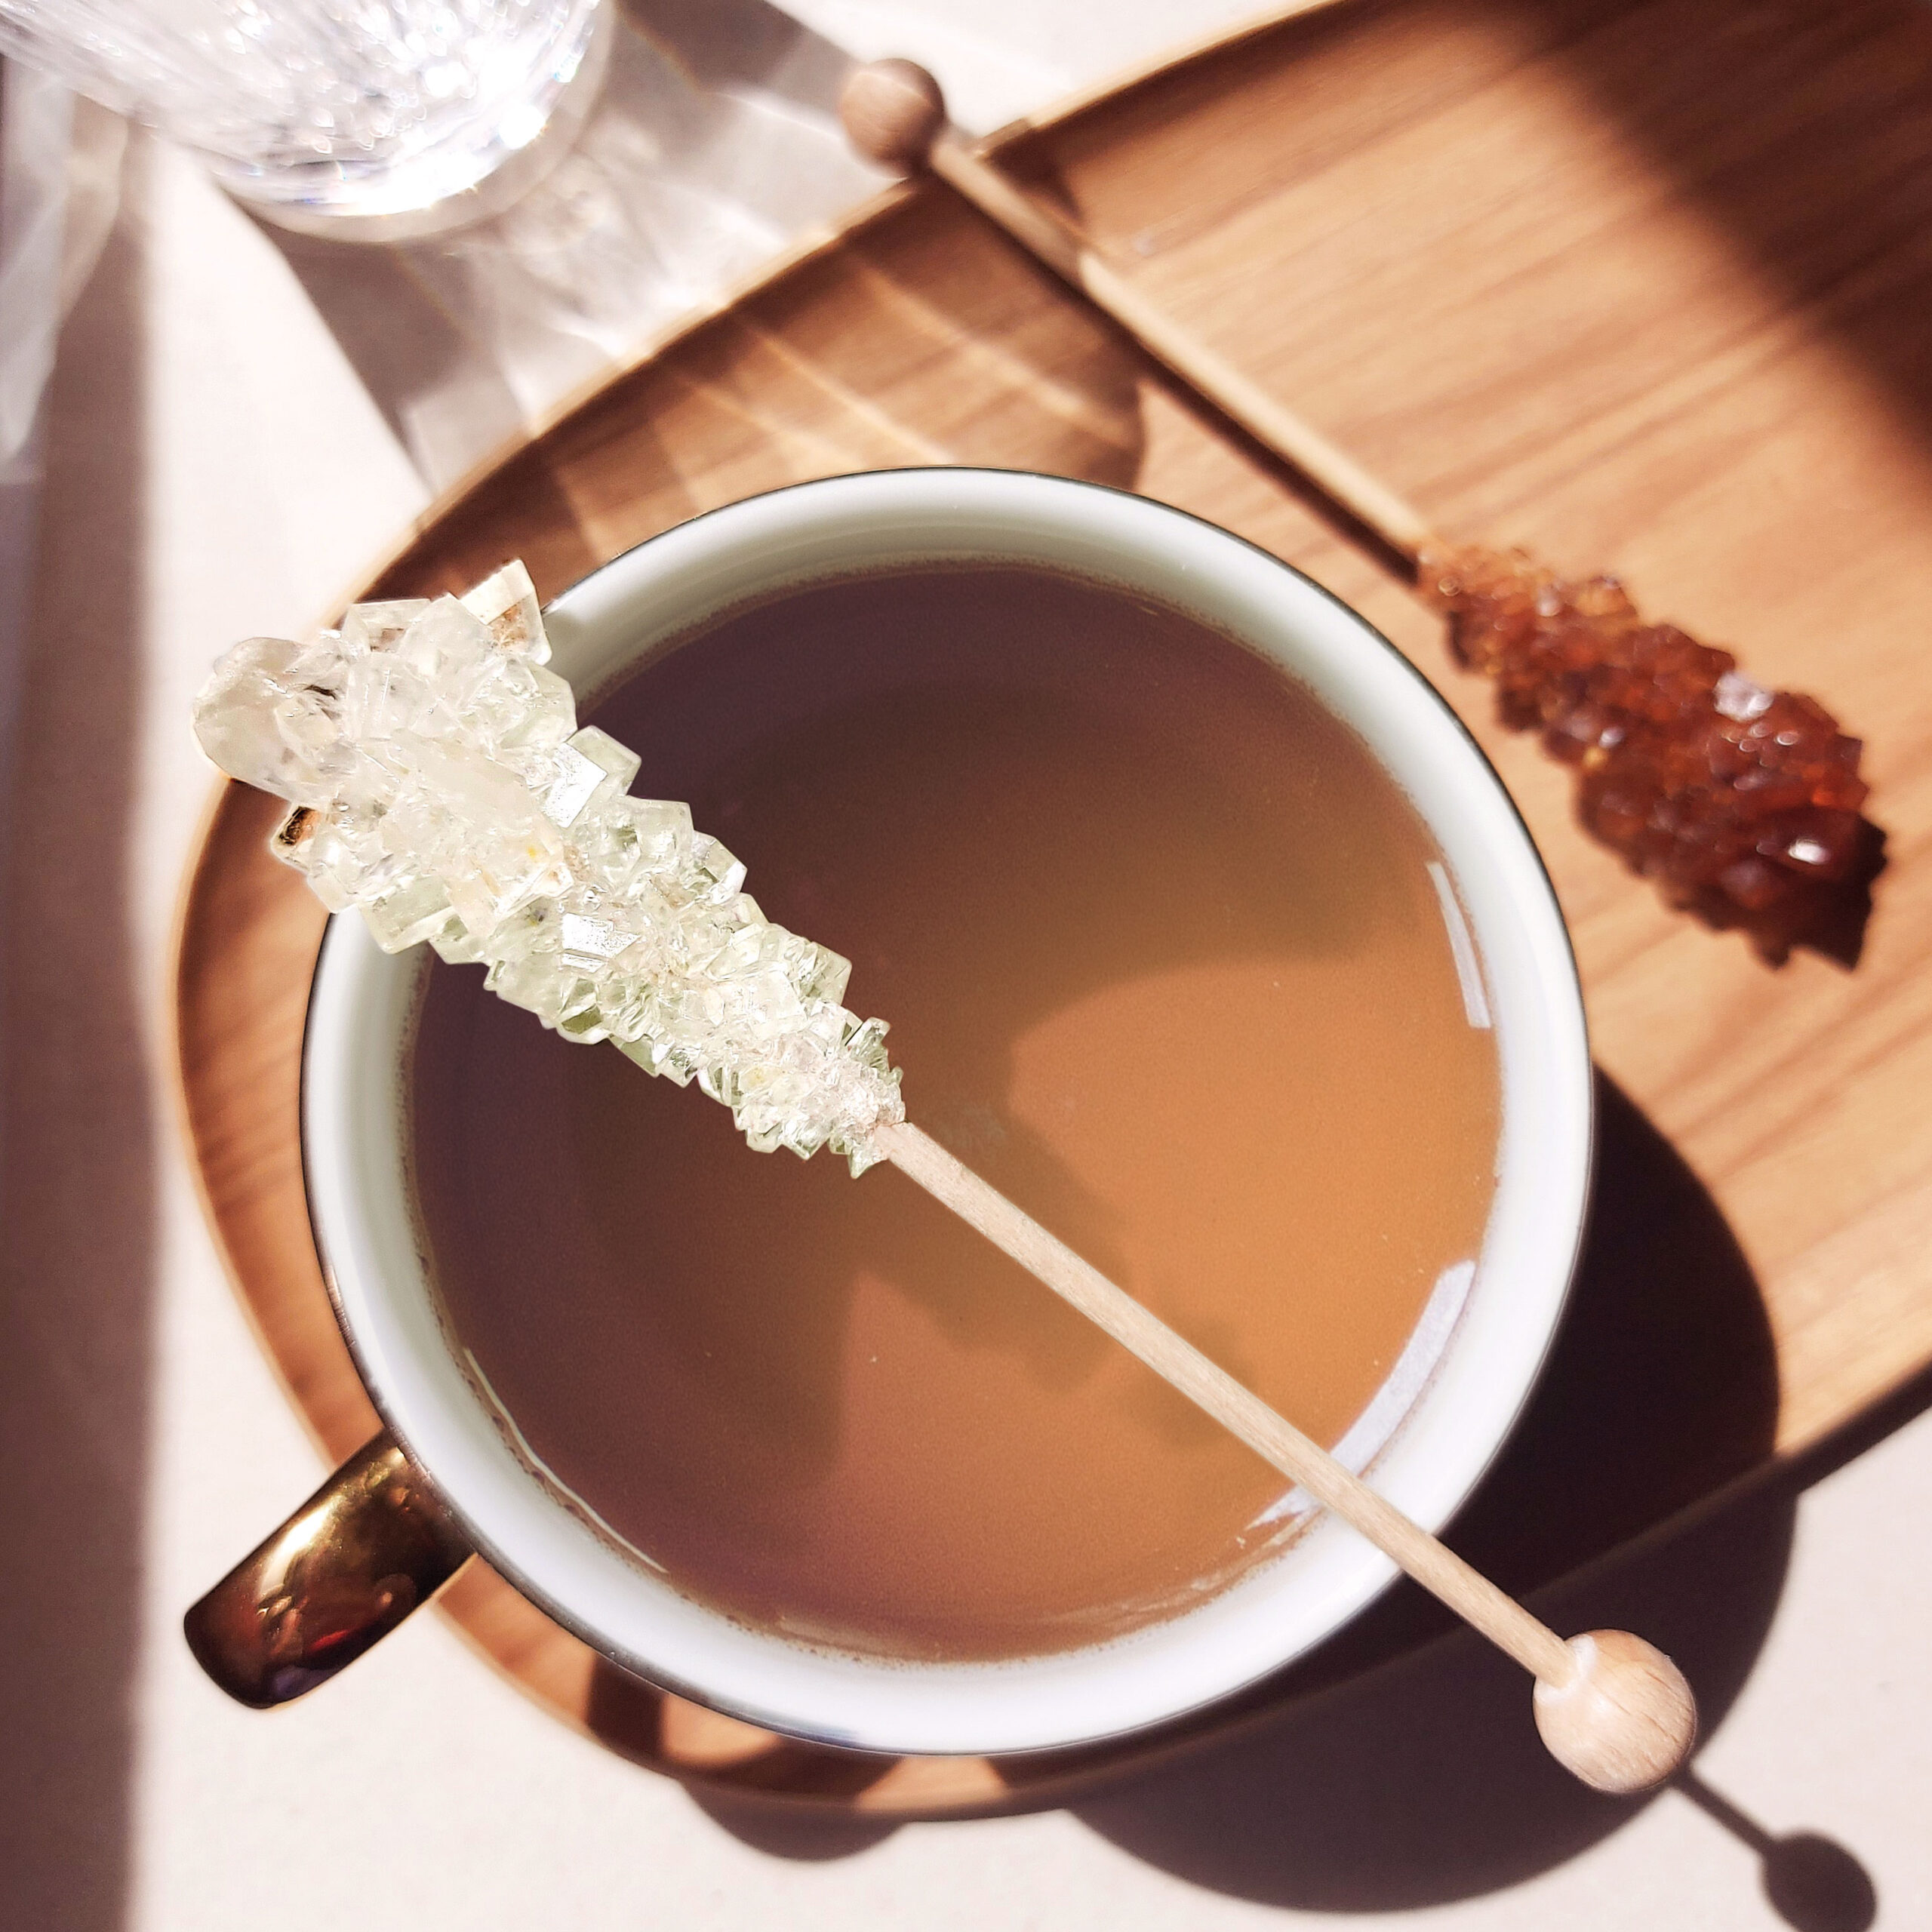 batonnet de sucre candi blanc - taille thé